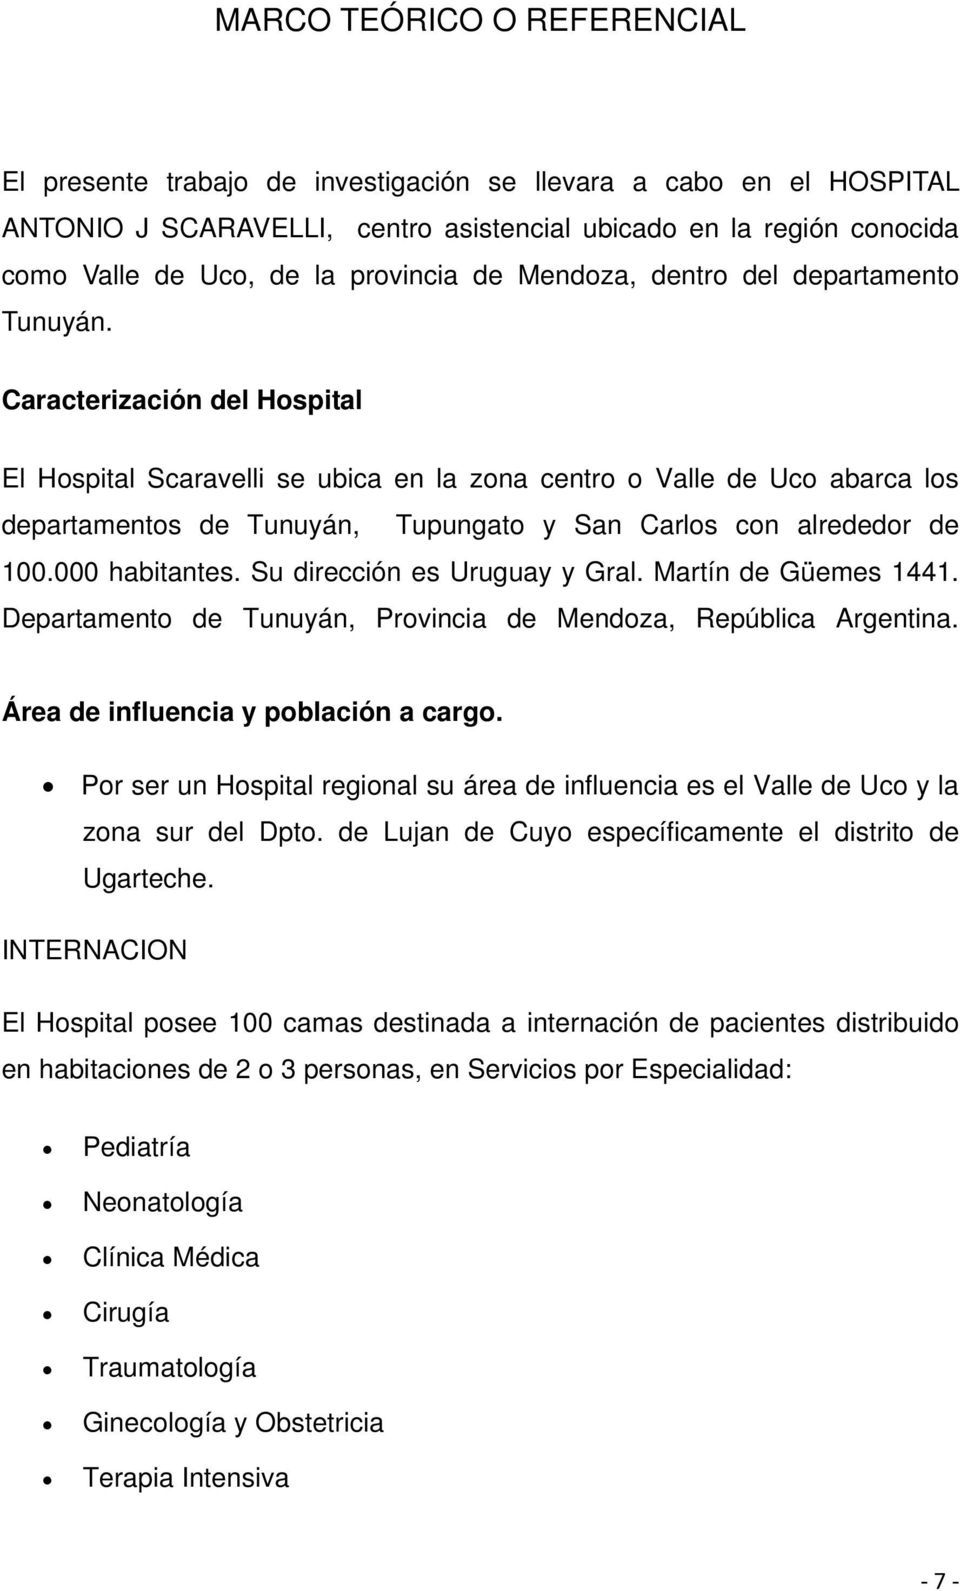 Caracterización del Hospital El Hospital Scaravelli se ubica en la zona centro o Valle de Uco abarca los departamentos de Tunuyán, Tupungato y San Carlos con alrededor de 100.000 habitantes.